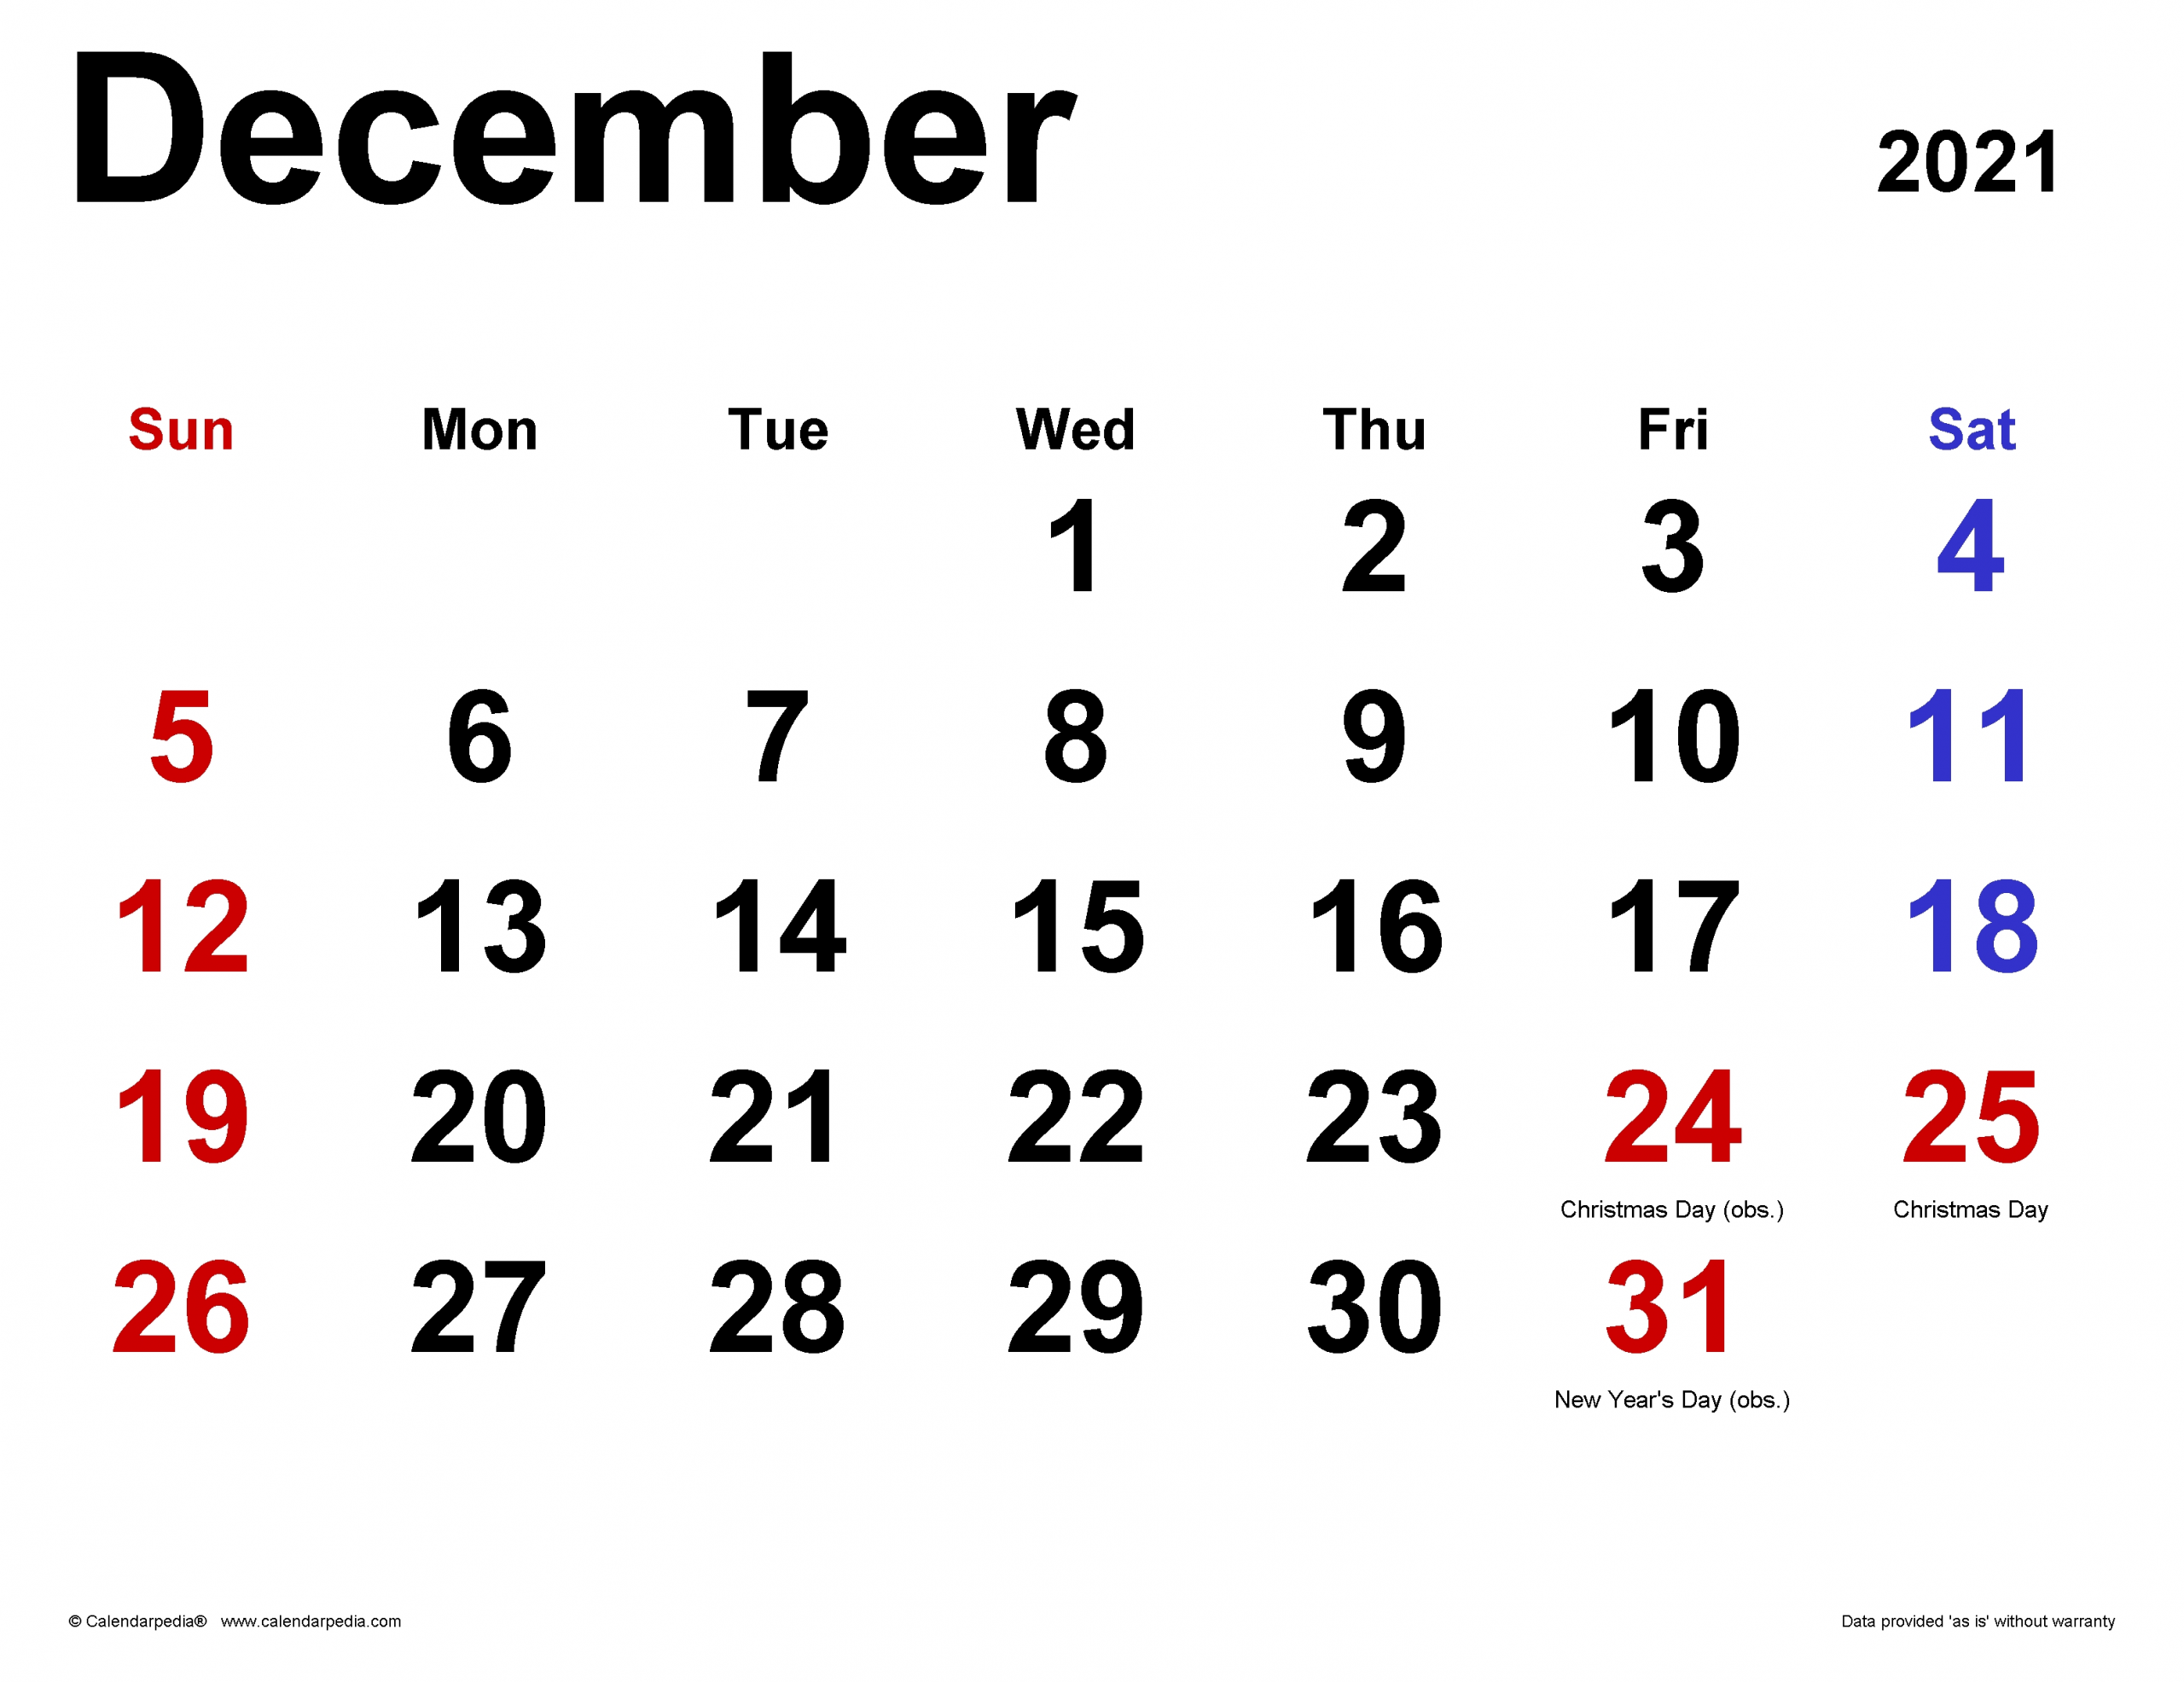 Get December Christmas 2021 Calendar Template